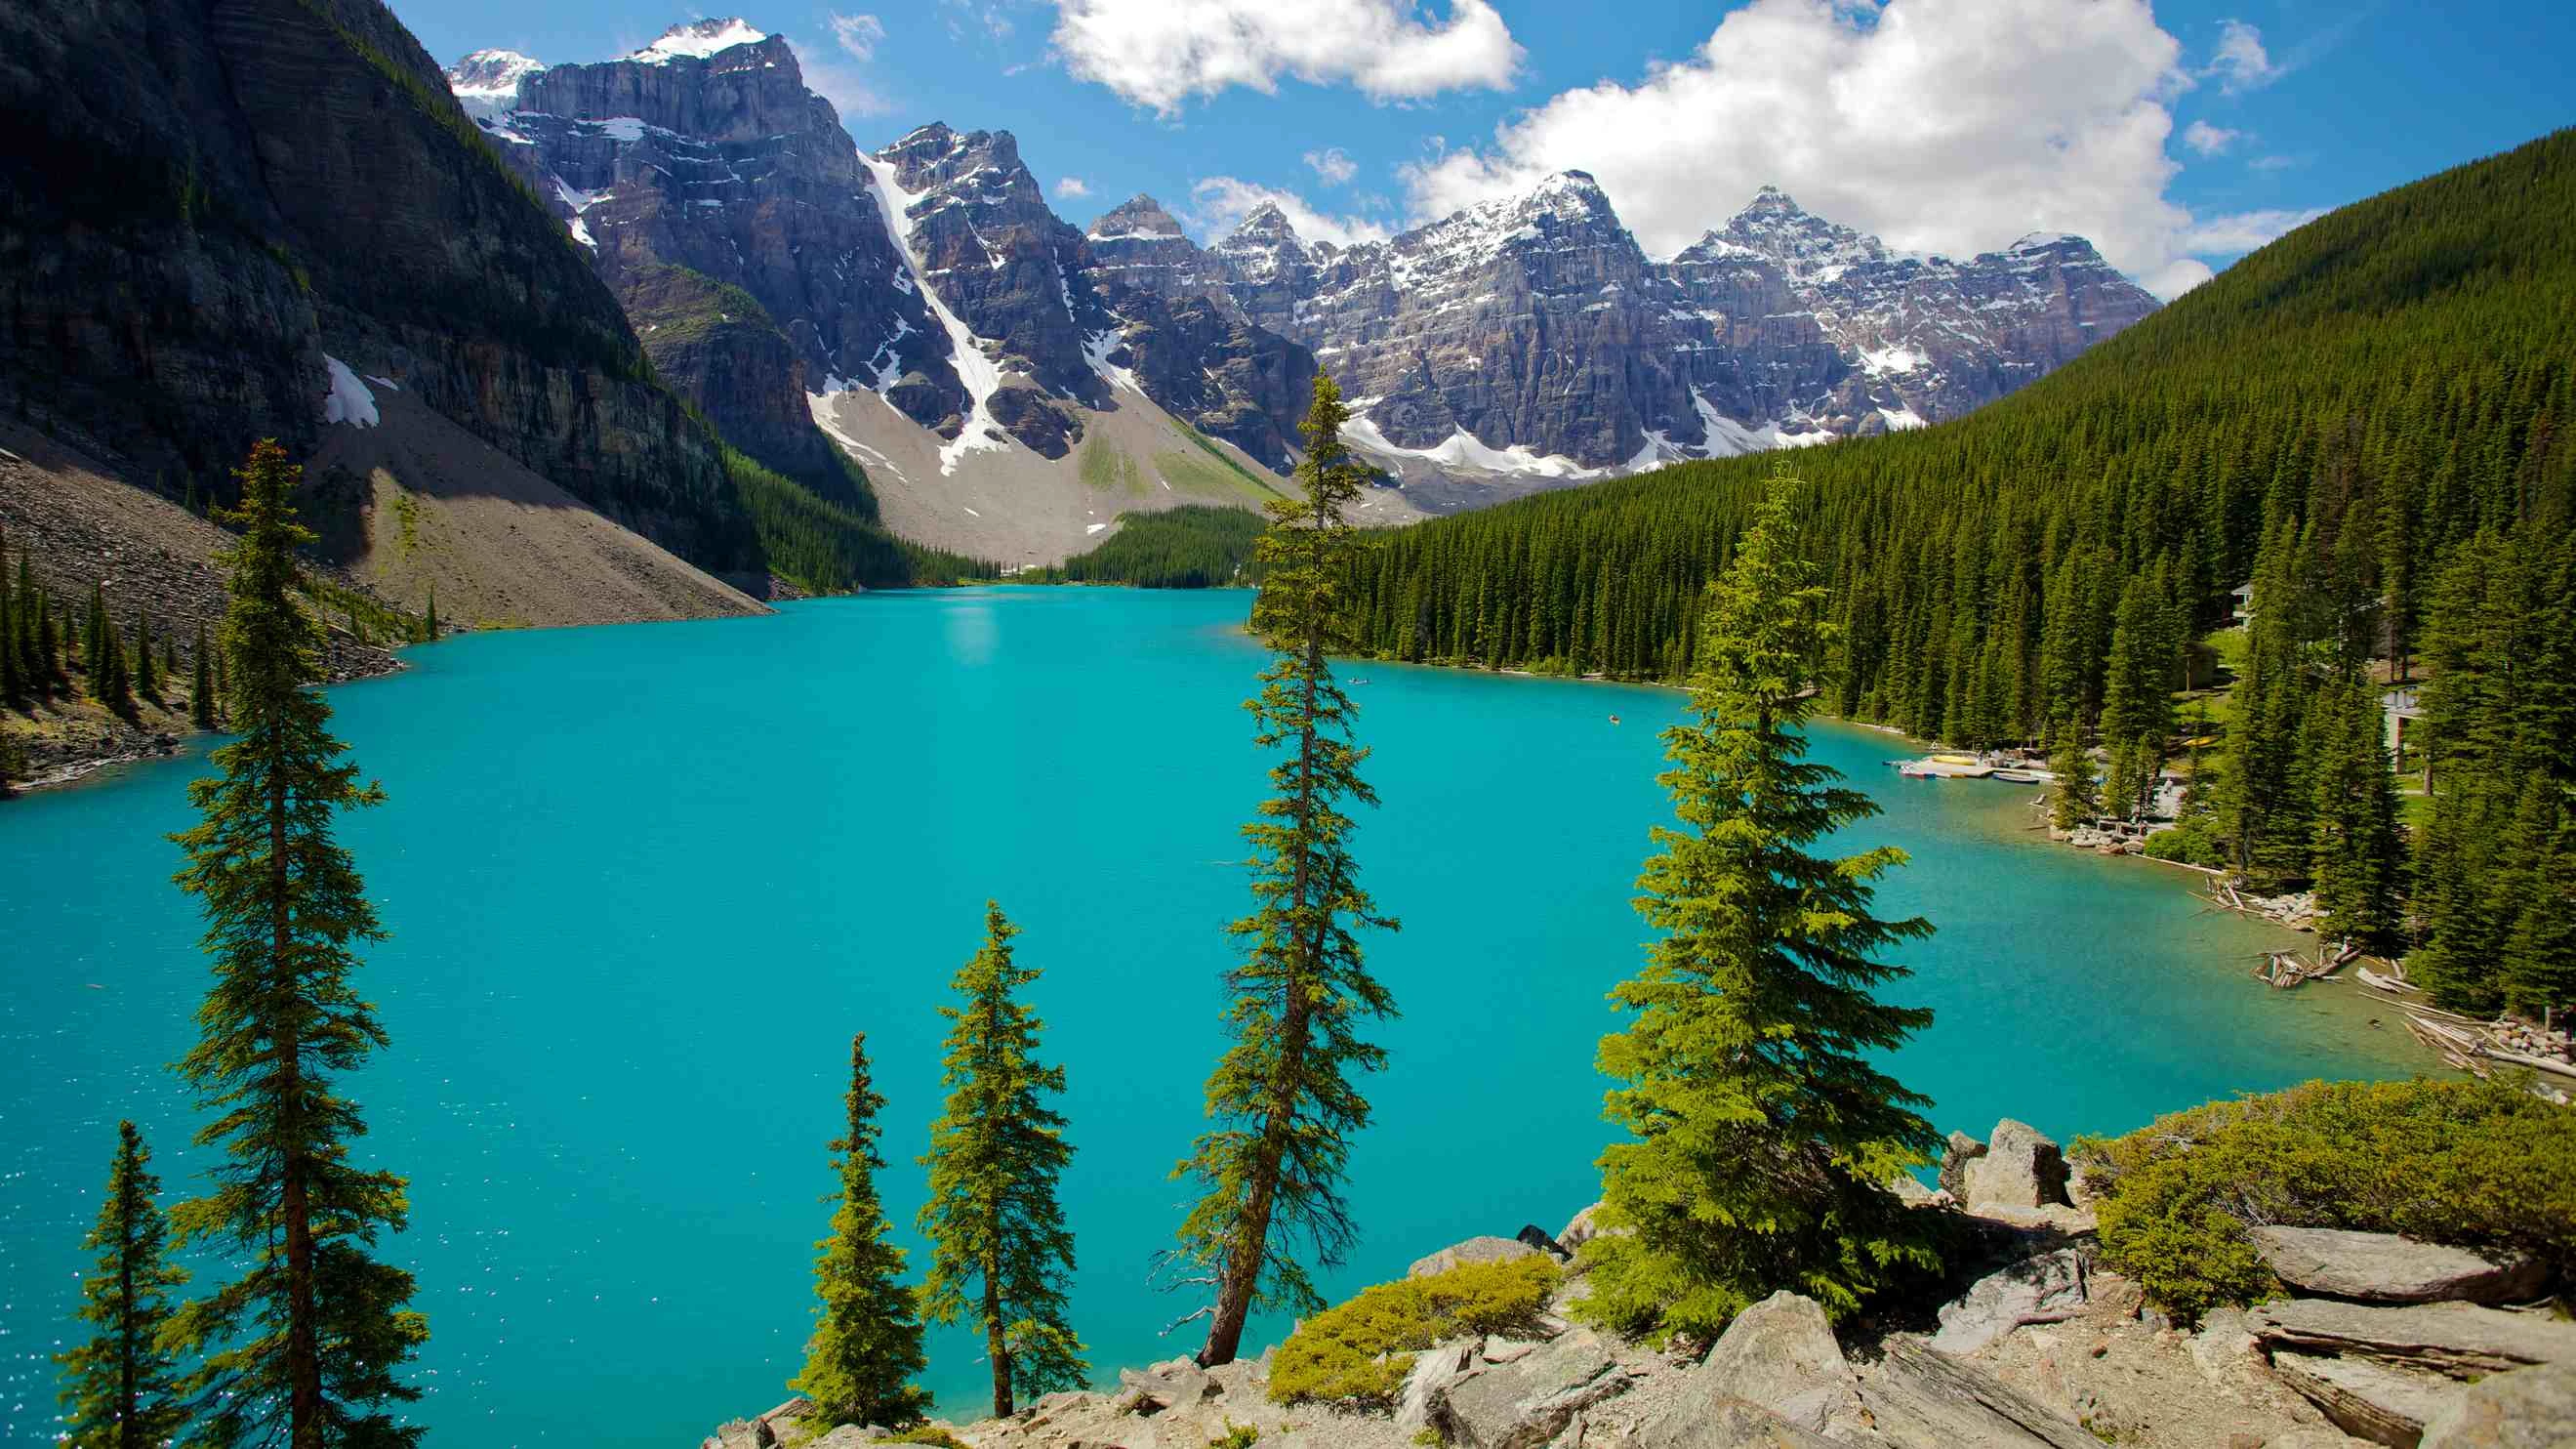 Explora la belleza natural de Banff, Canadá